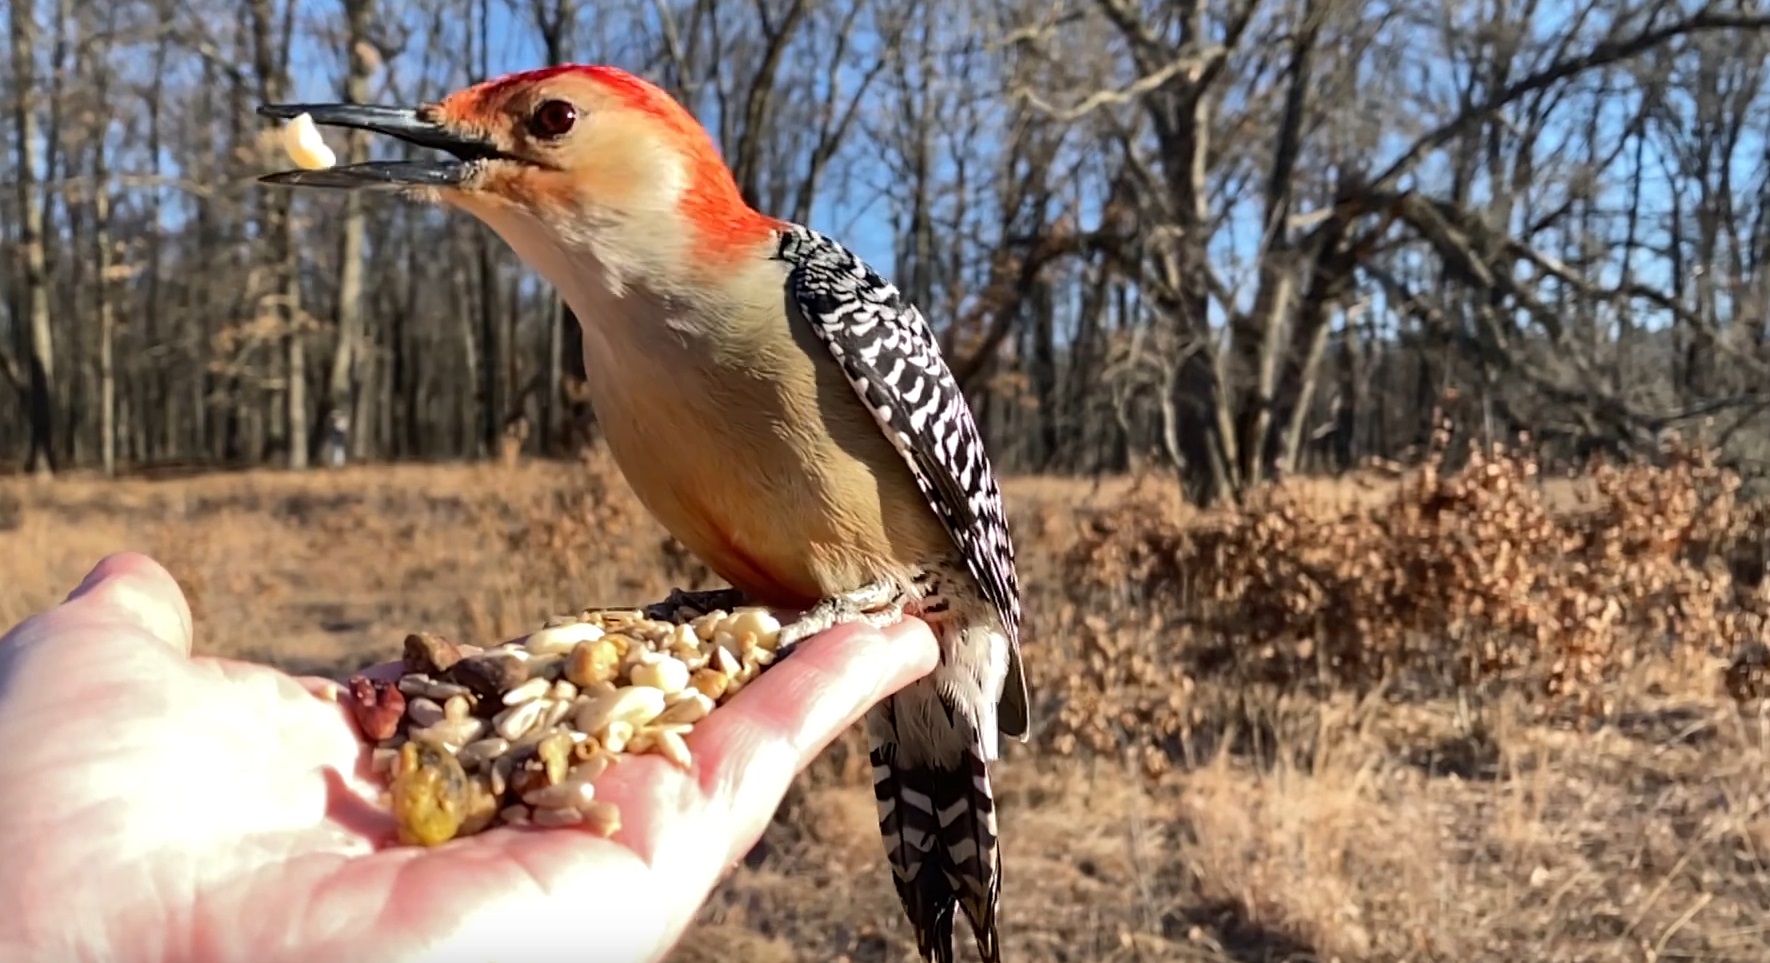 Feeding Red-bellied Woodpecker In Slo Mo